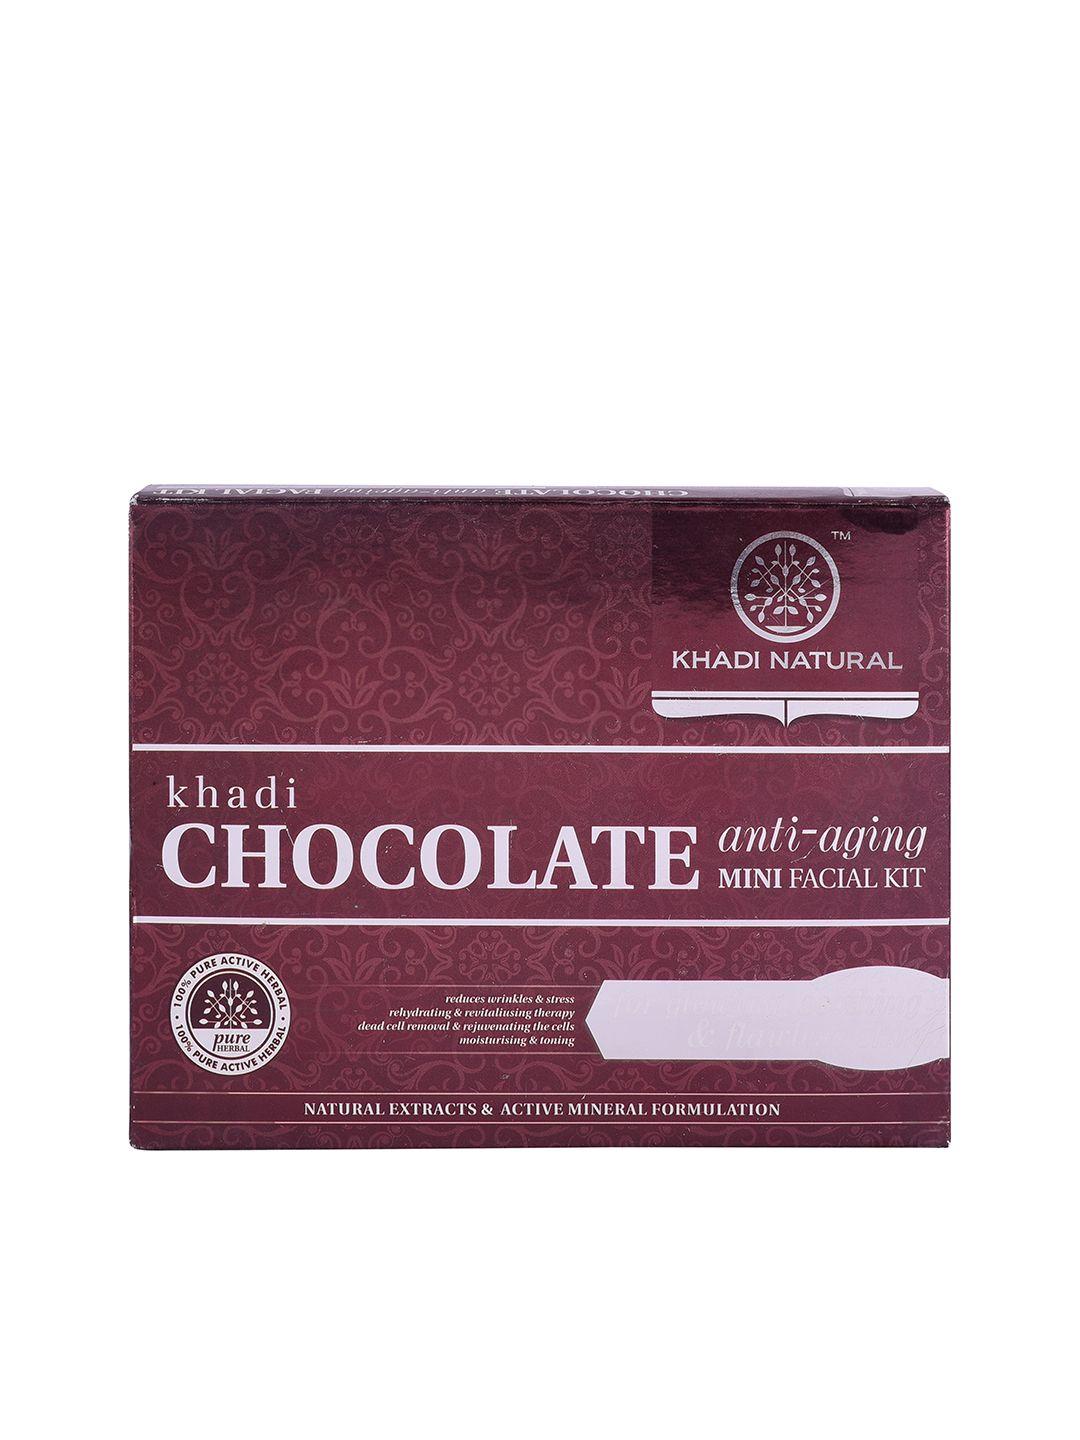 khadi natural chocolate anti-ageing mini facial kit